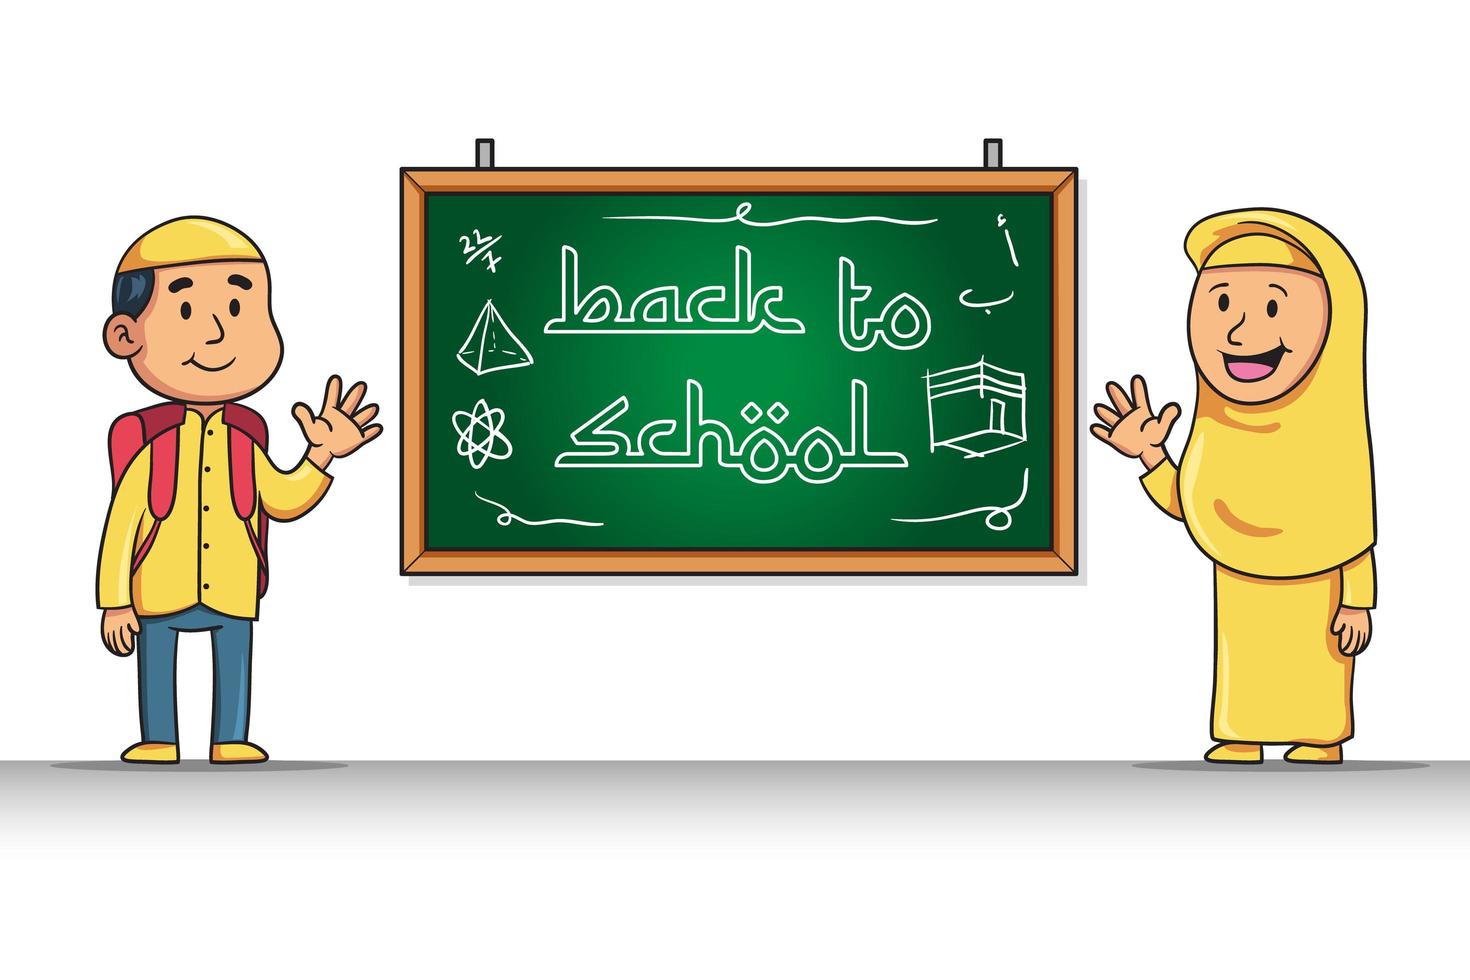 personaje de dibujos animados del estudiante musulmán devolver al saludo escolar vector